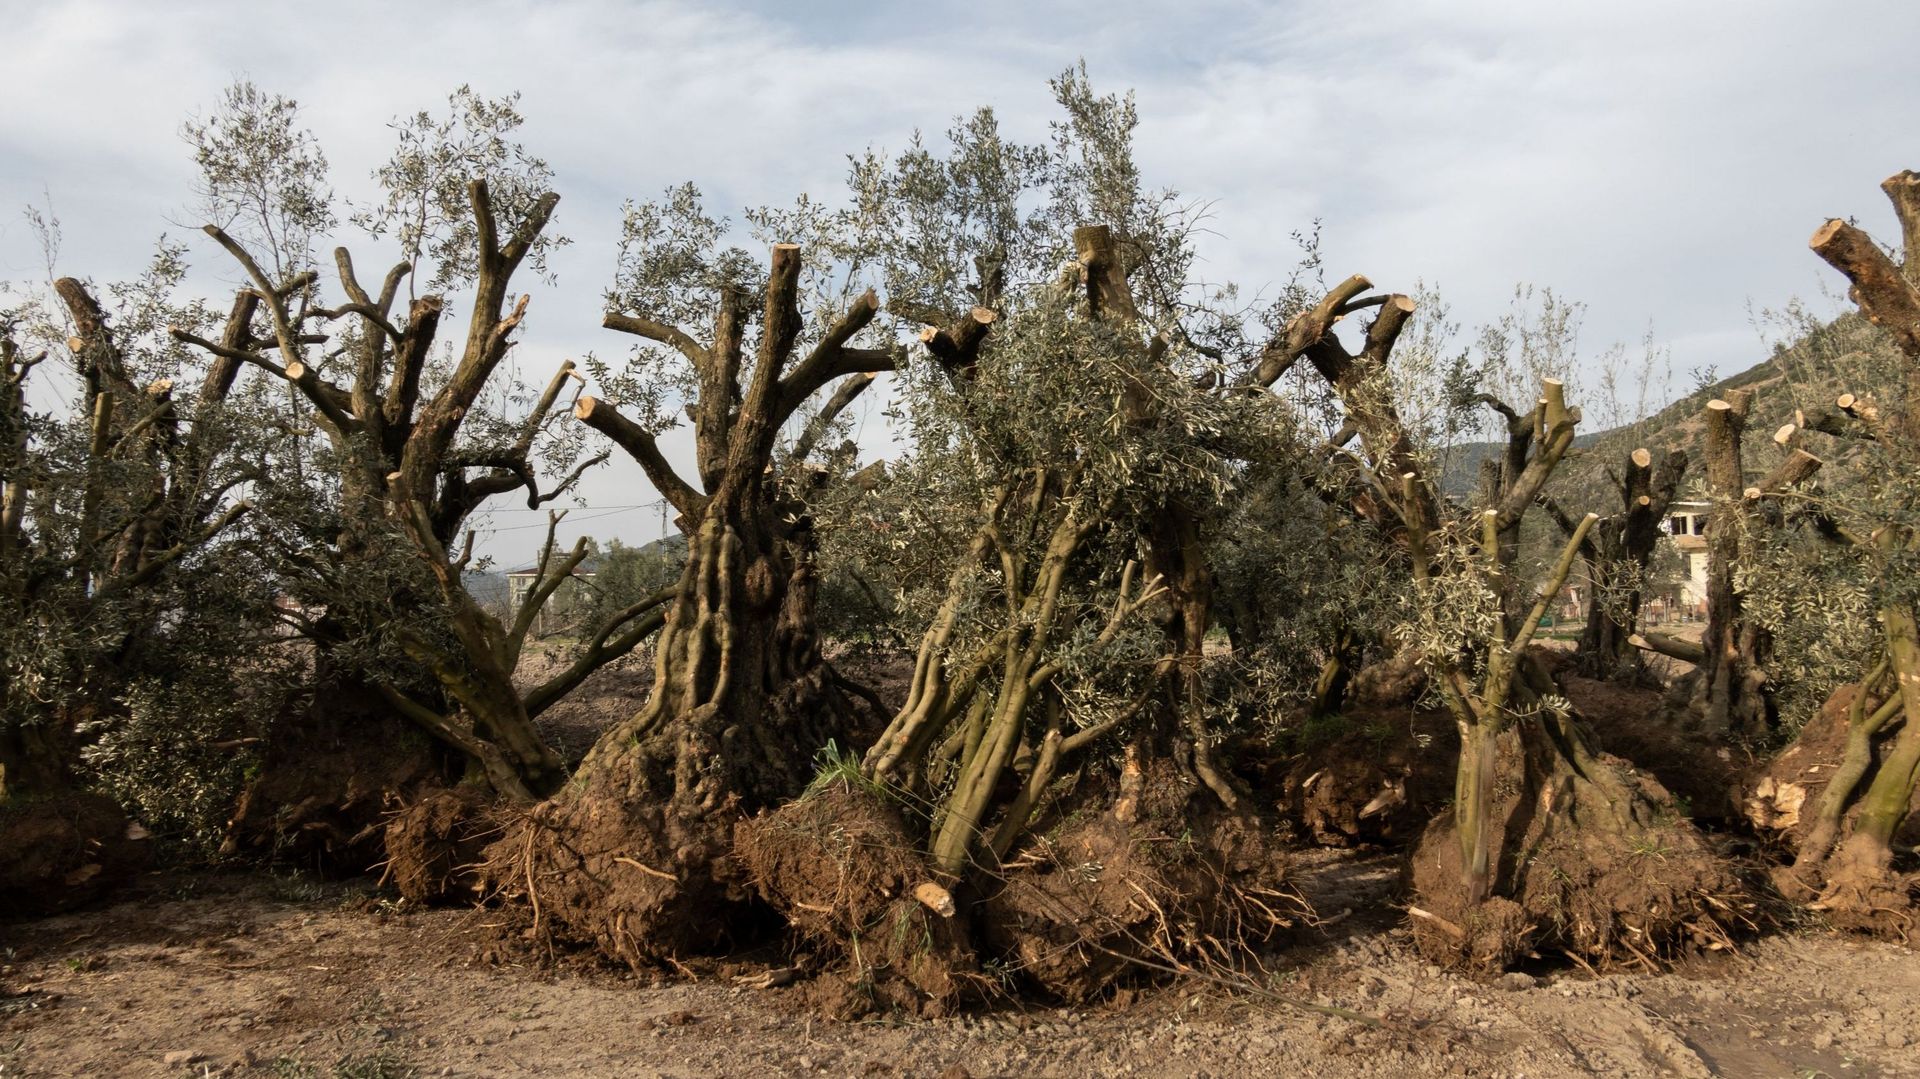 Les oliviers sont arrachés sans qu’un cernage préalable des racines ait été effectué les années précédentes afin de favoriser le développement de radicelles près du tronc. La faible densité de racines actives dans la motte compromet une bonne reprise.